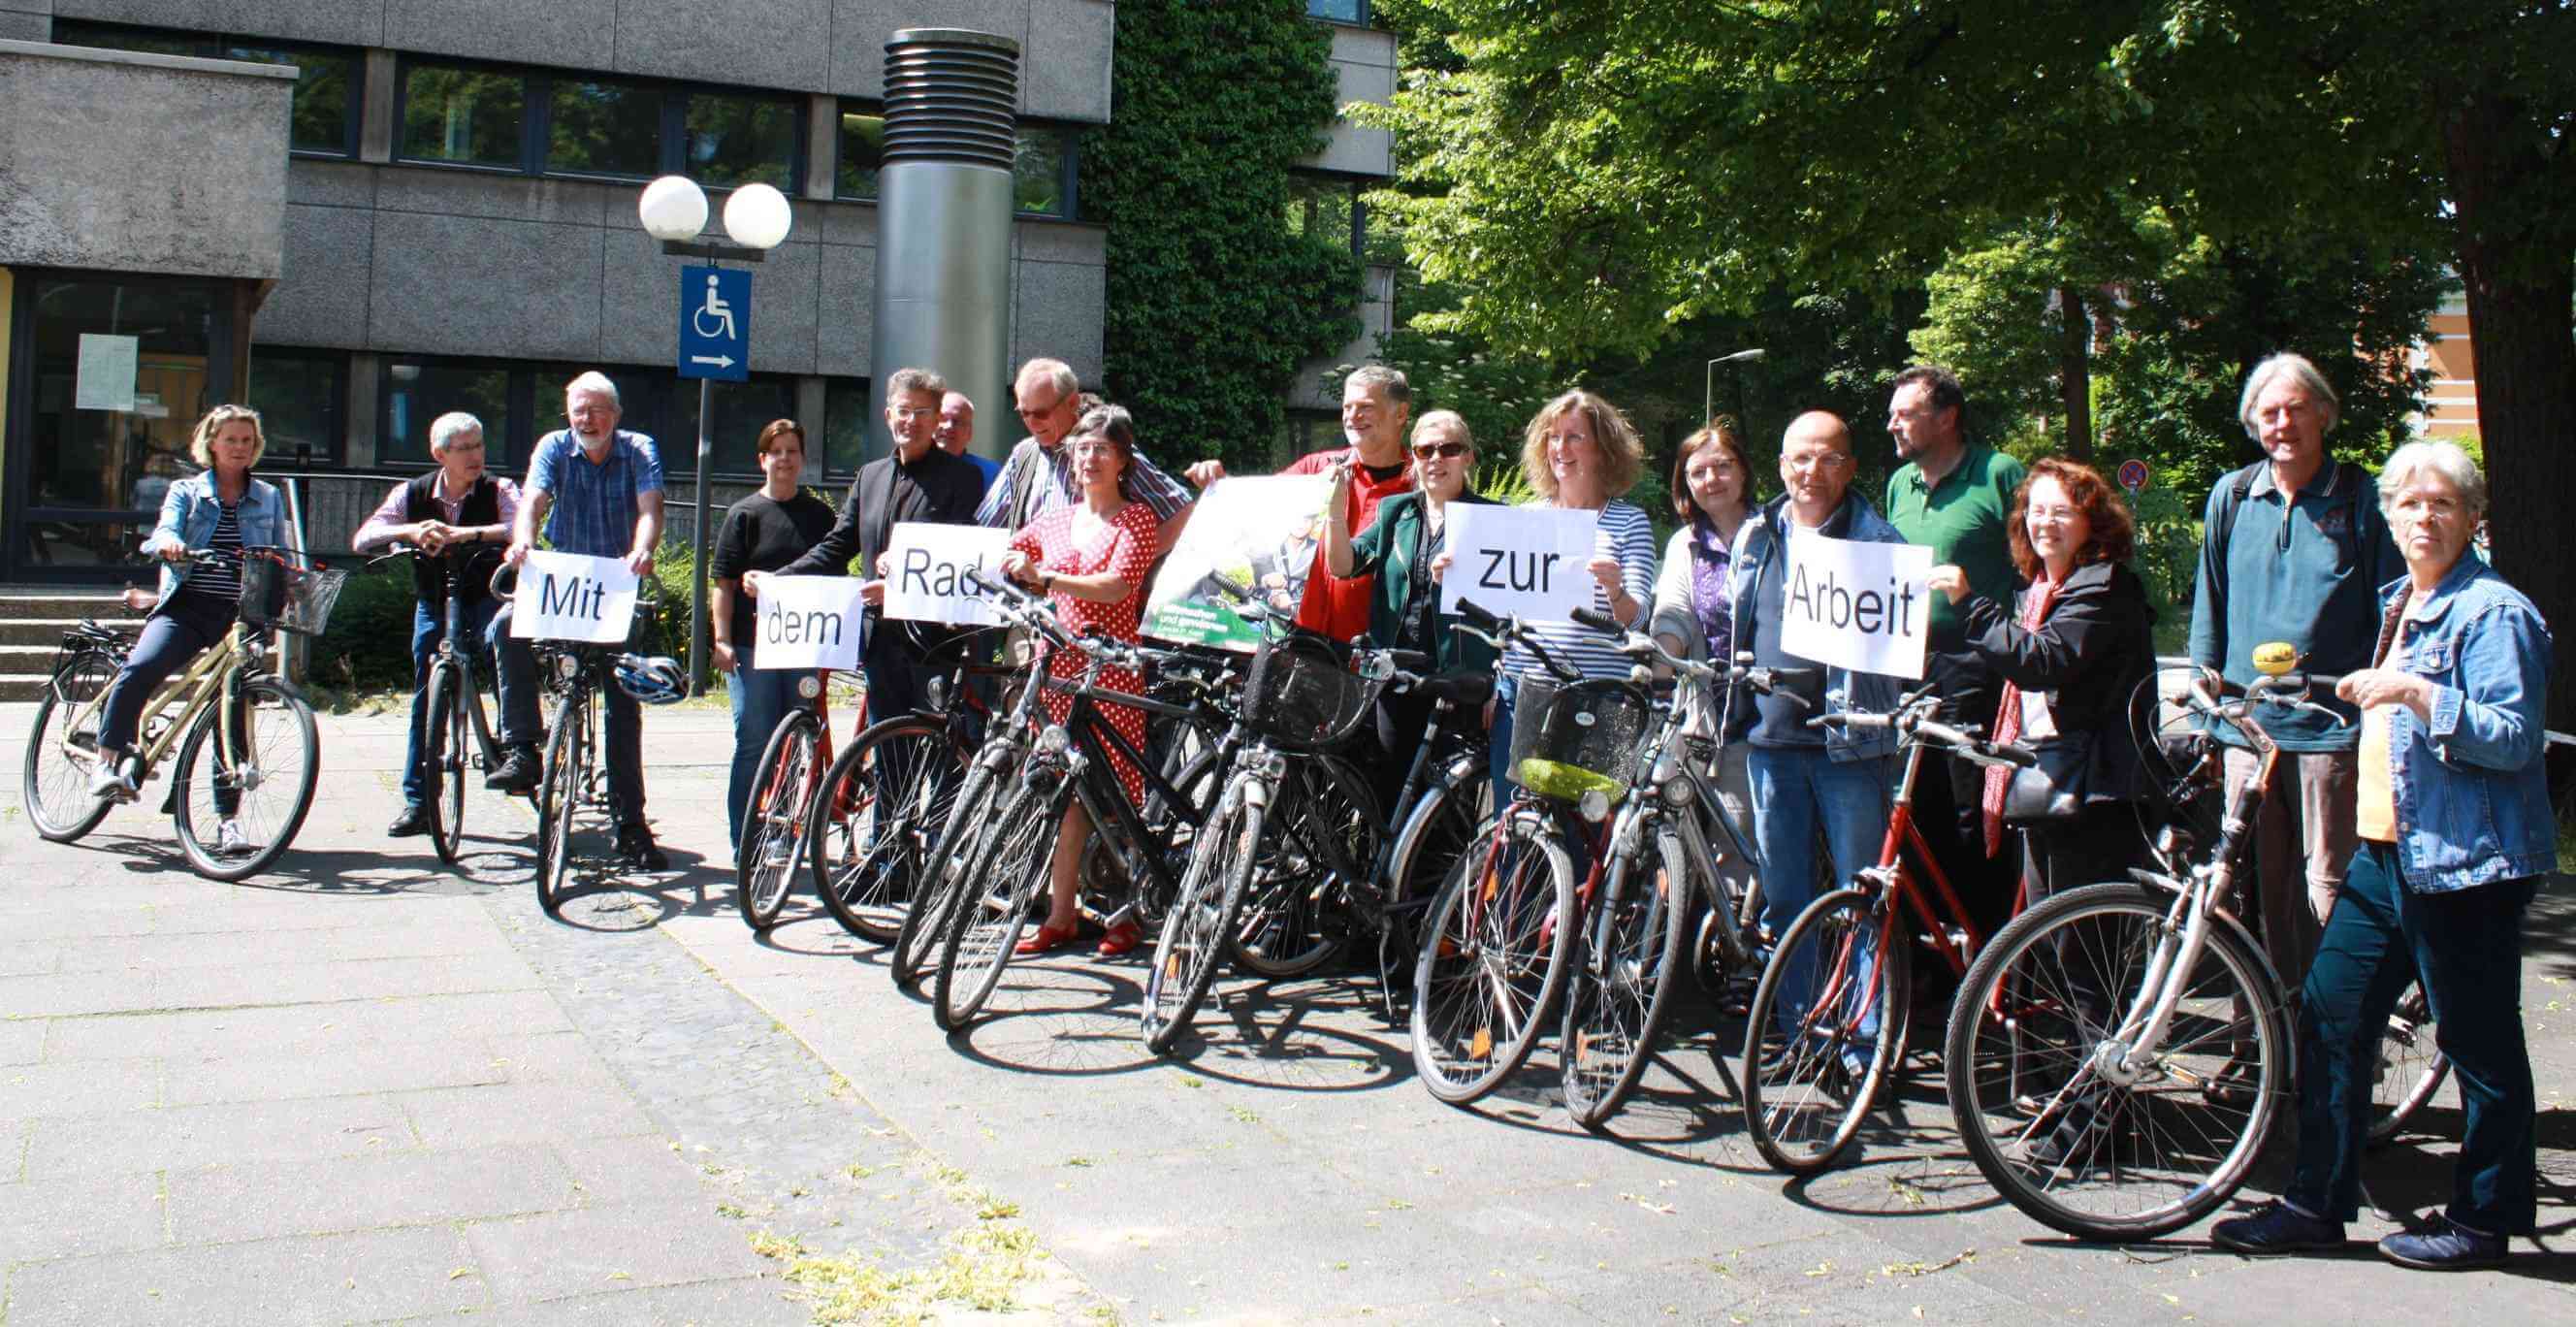 Auf die Räder, fertig, los!: Aktion „Mit dem Rad zur Arbeit“ in Steglitz-Zehlendorf gestartet